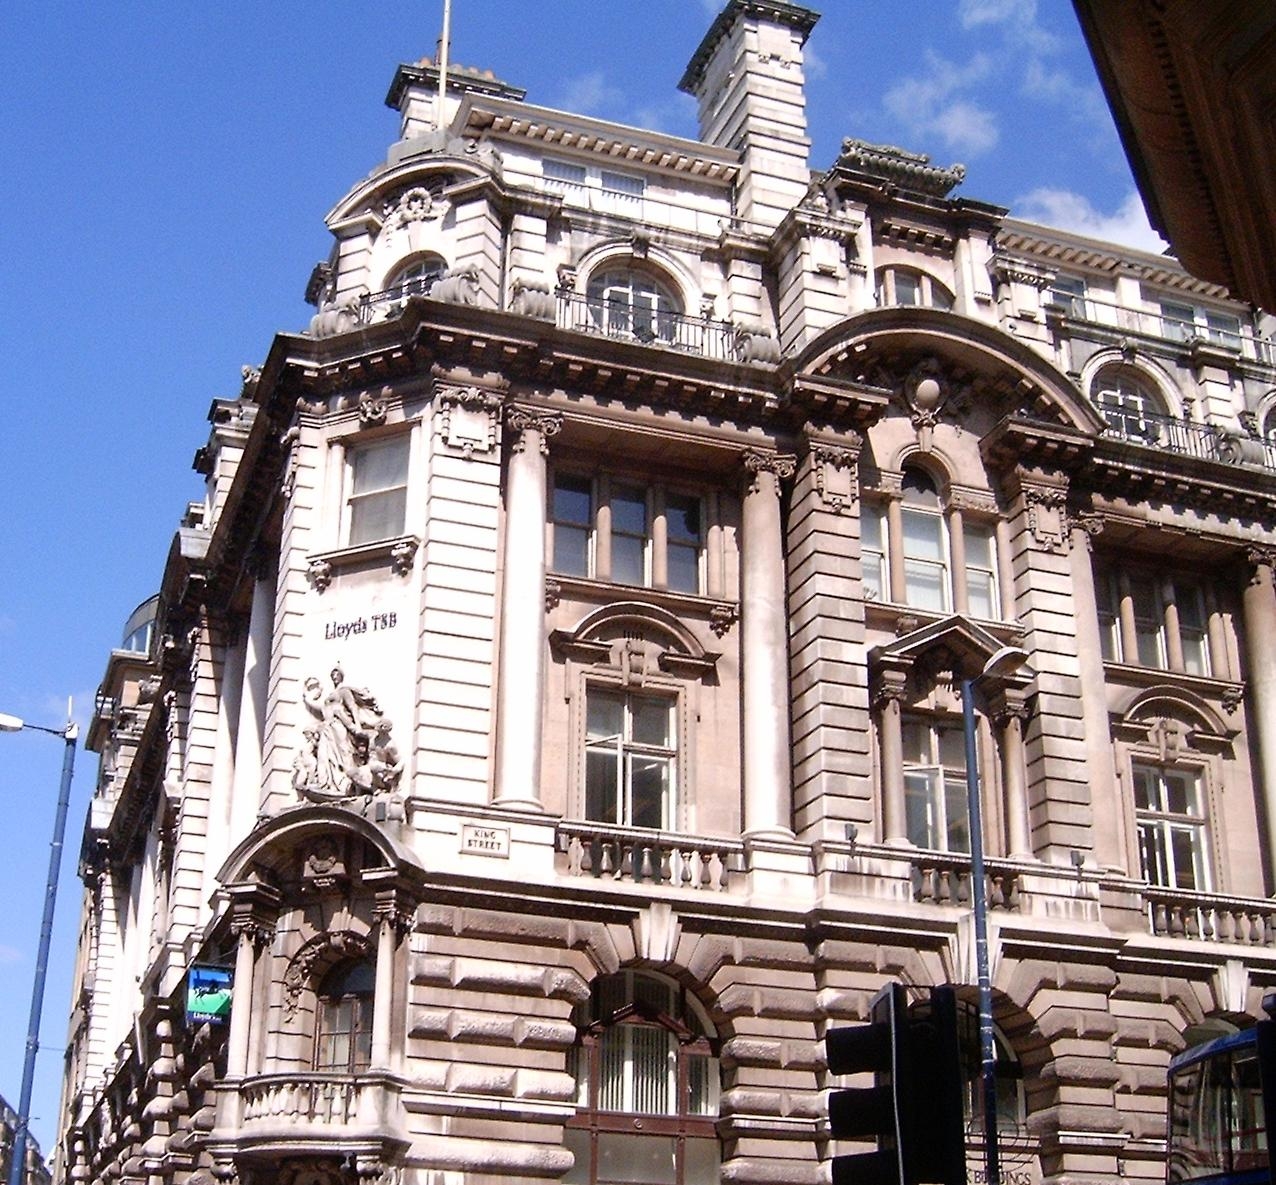 5. King Street Manchester филиал Lloyds TSB, разработанная Чарльзом Heathcote в 1915 году